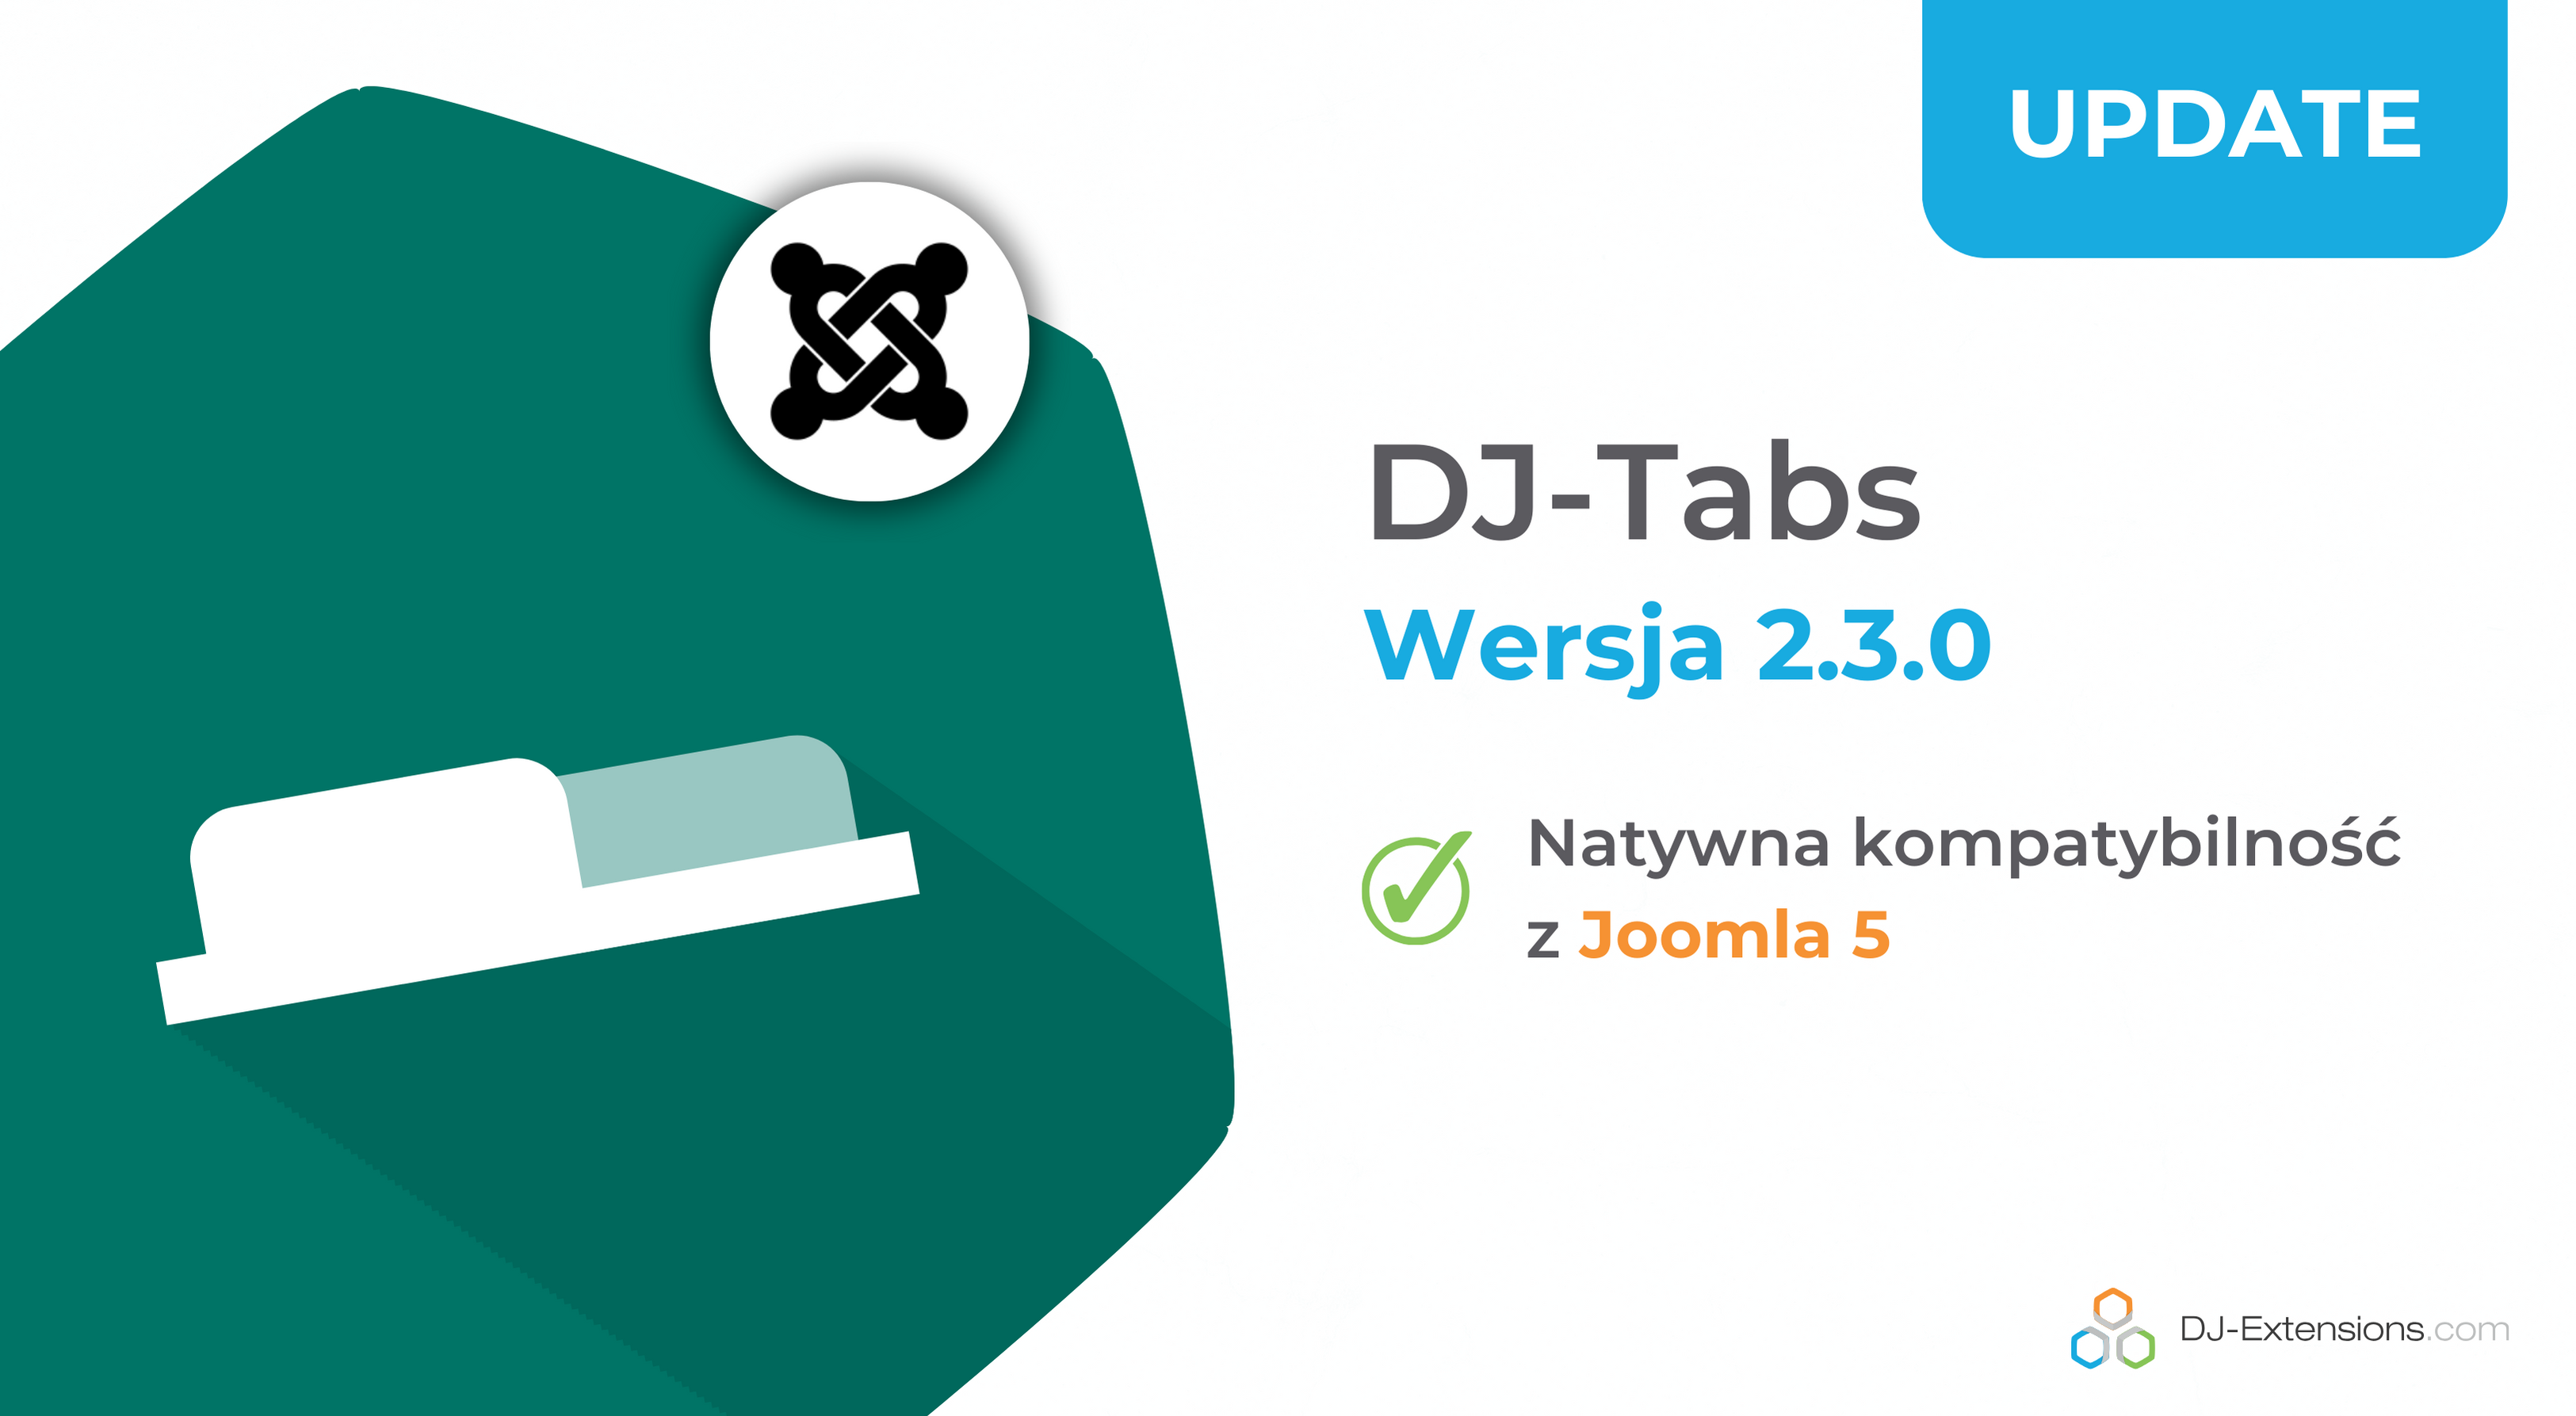 [Aktualizacja] DJ-Tabs w wersji 2.3.0 kompatybilny natywnie z Joomla 5!